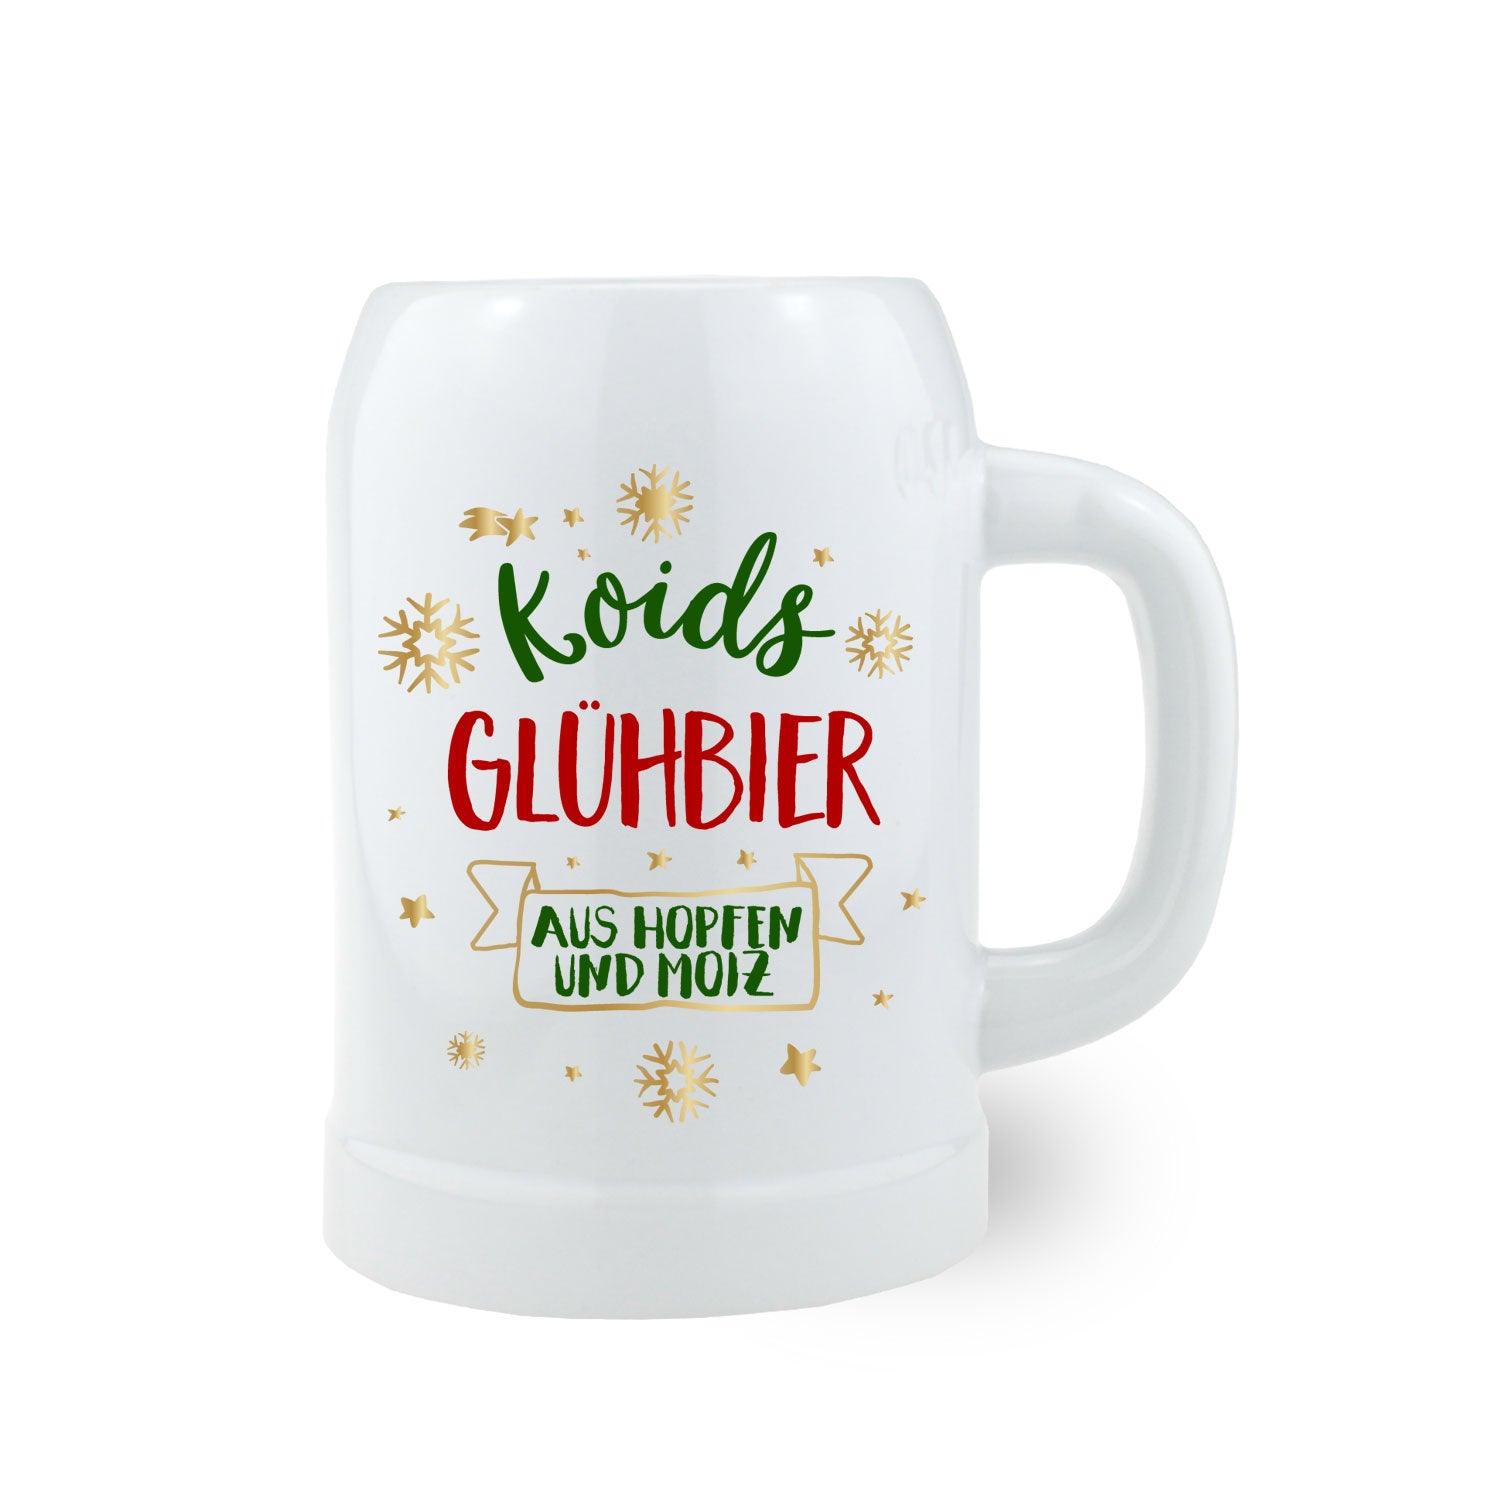 Bierkrug "Koids Glühbier" - bavariashop - mei LebensGfui